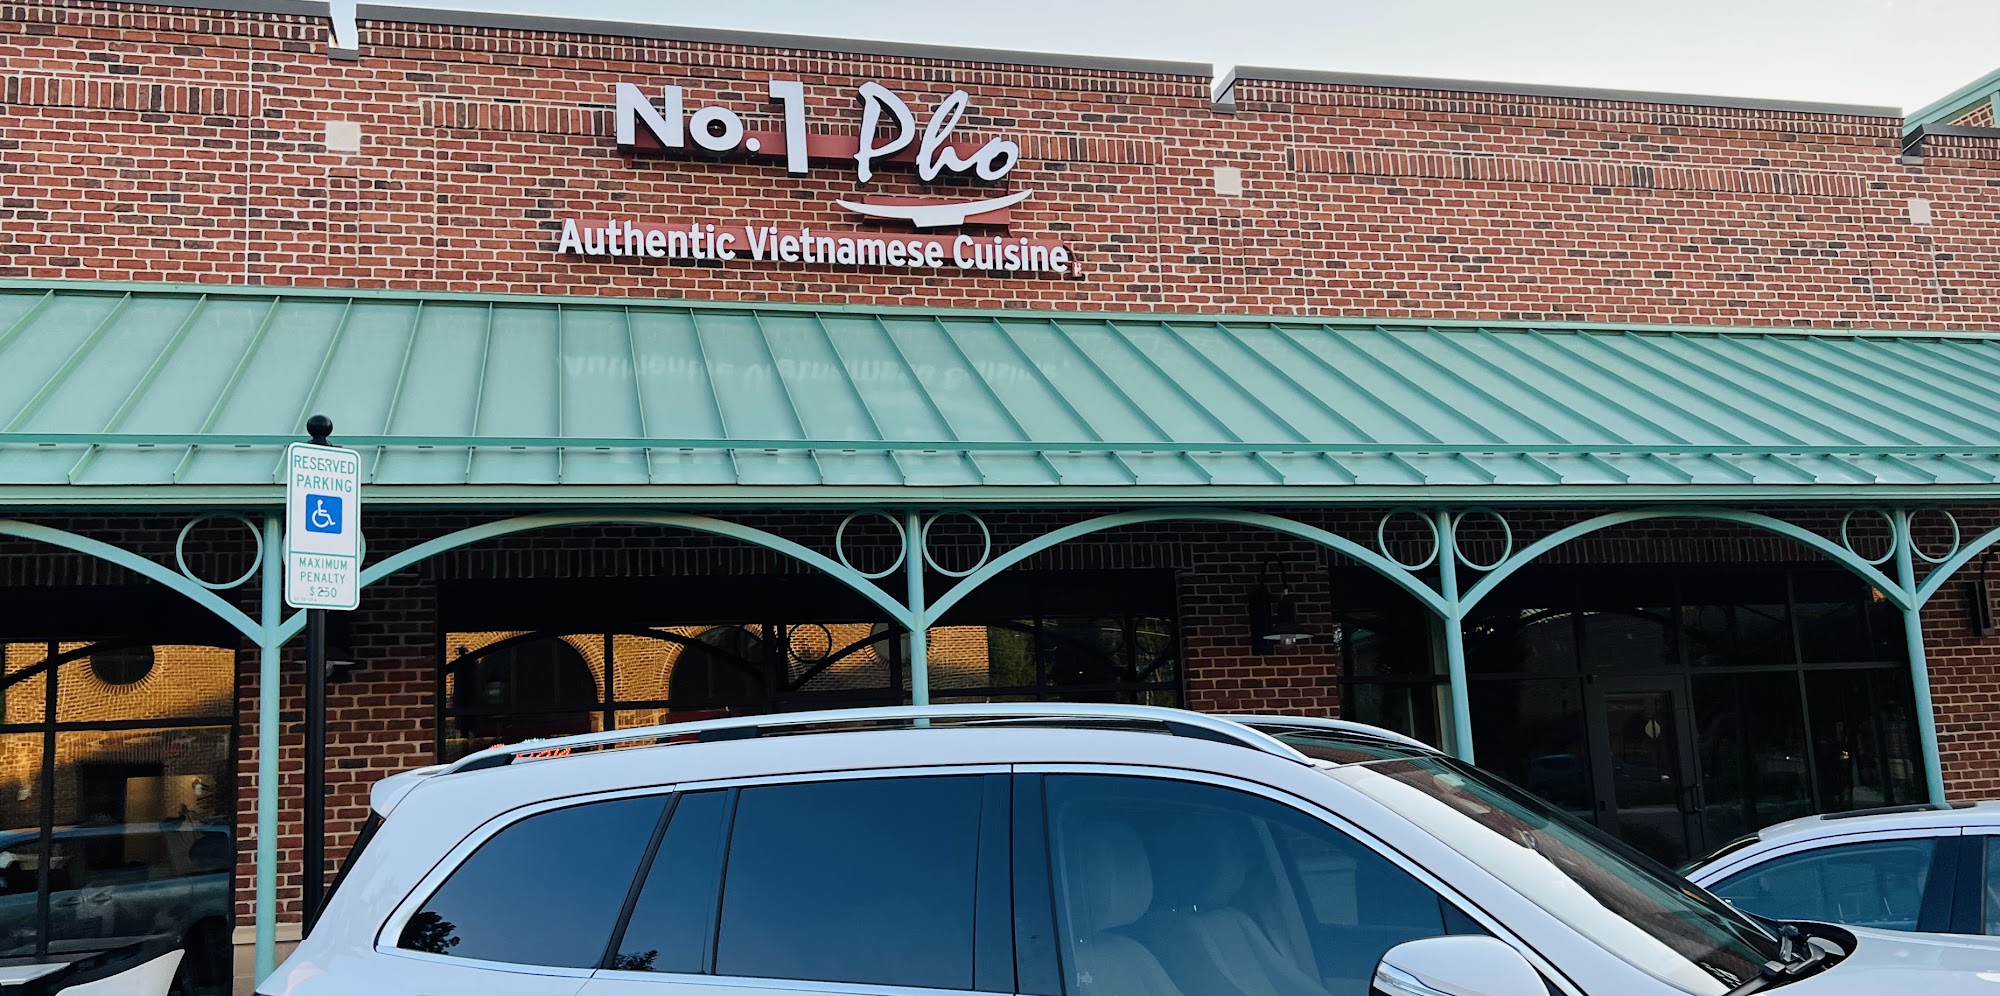 No.1 Pho Authentic Vietnamese Cuisine